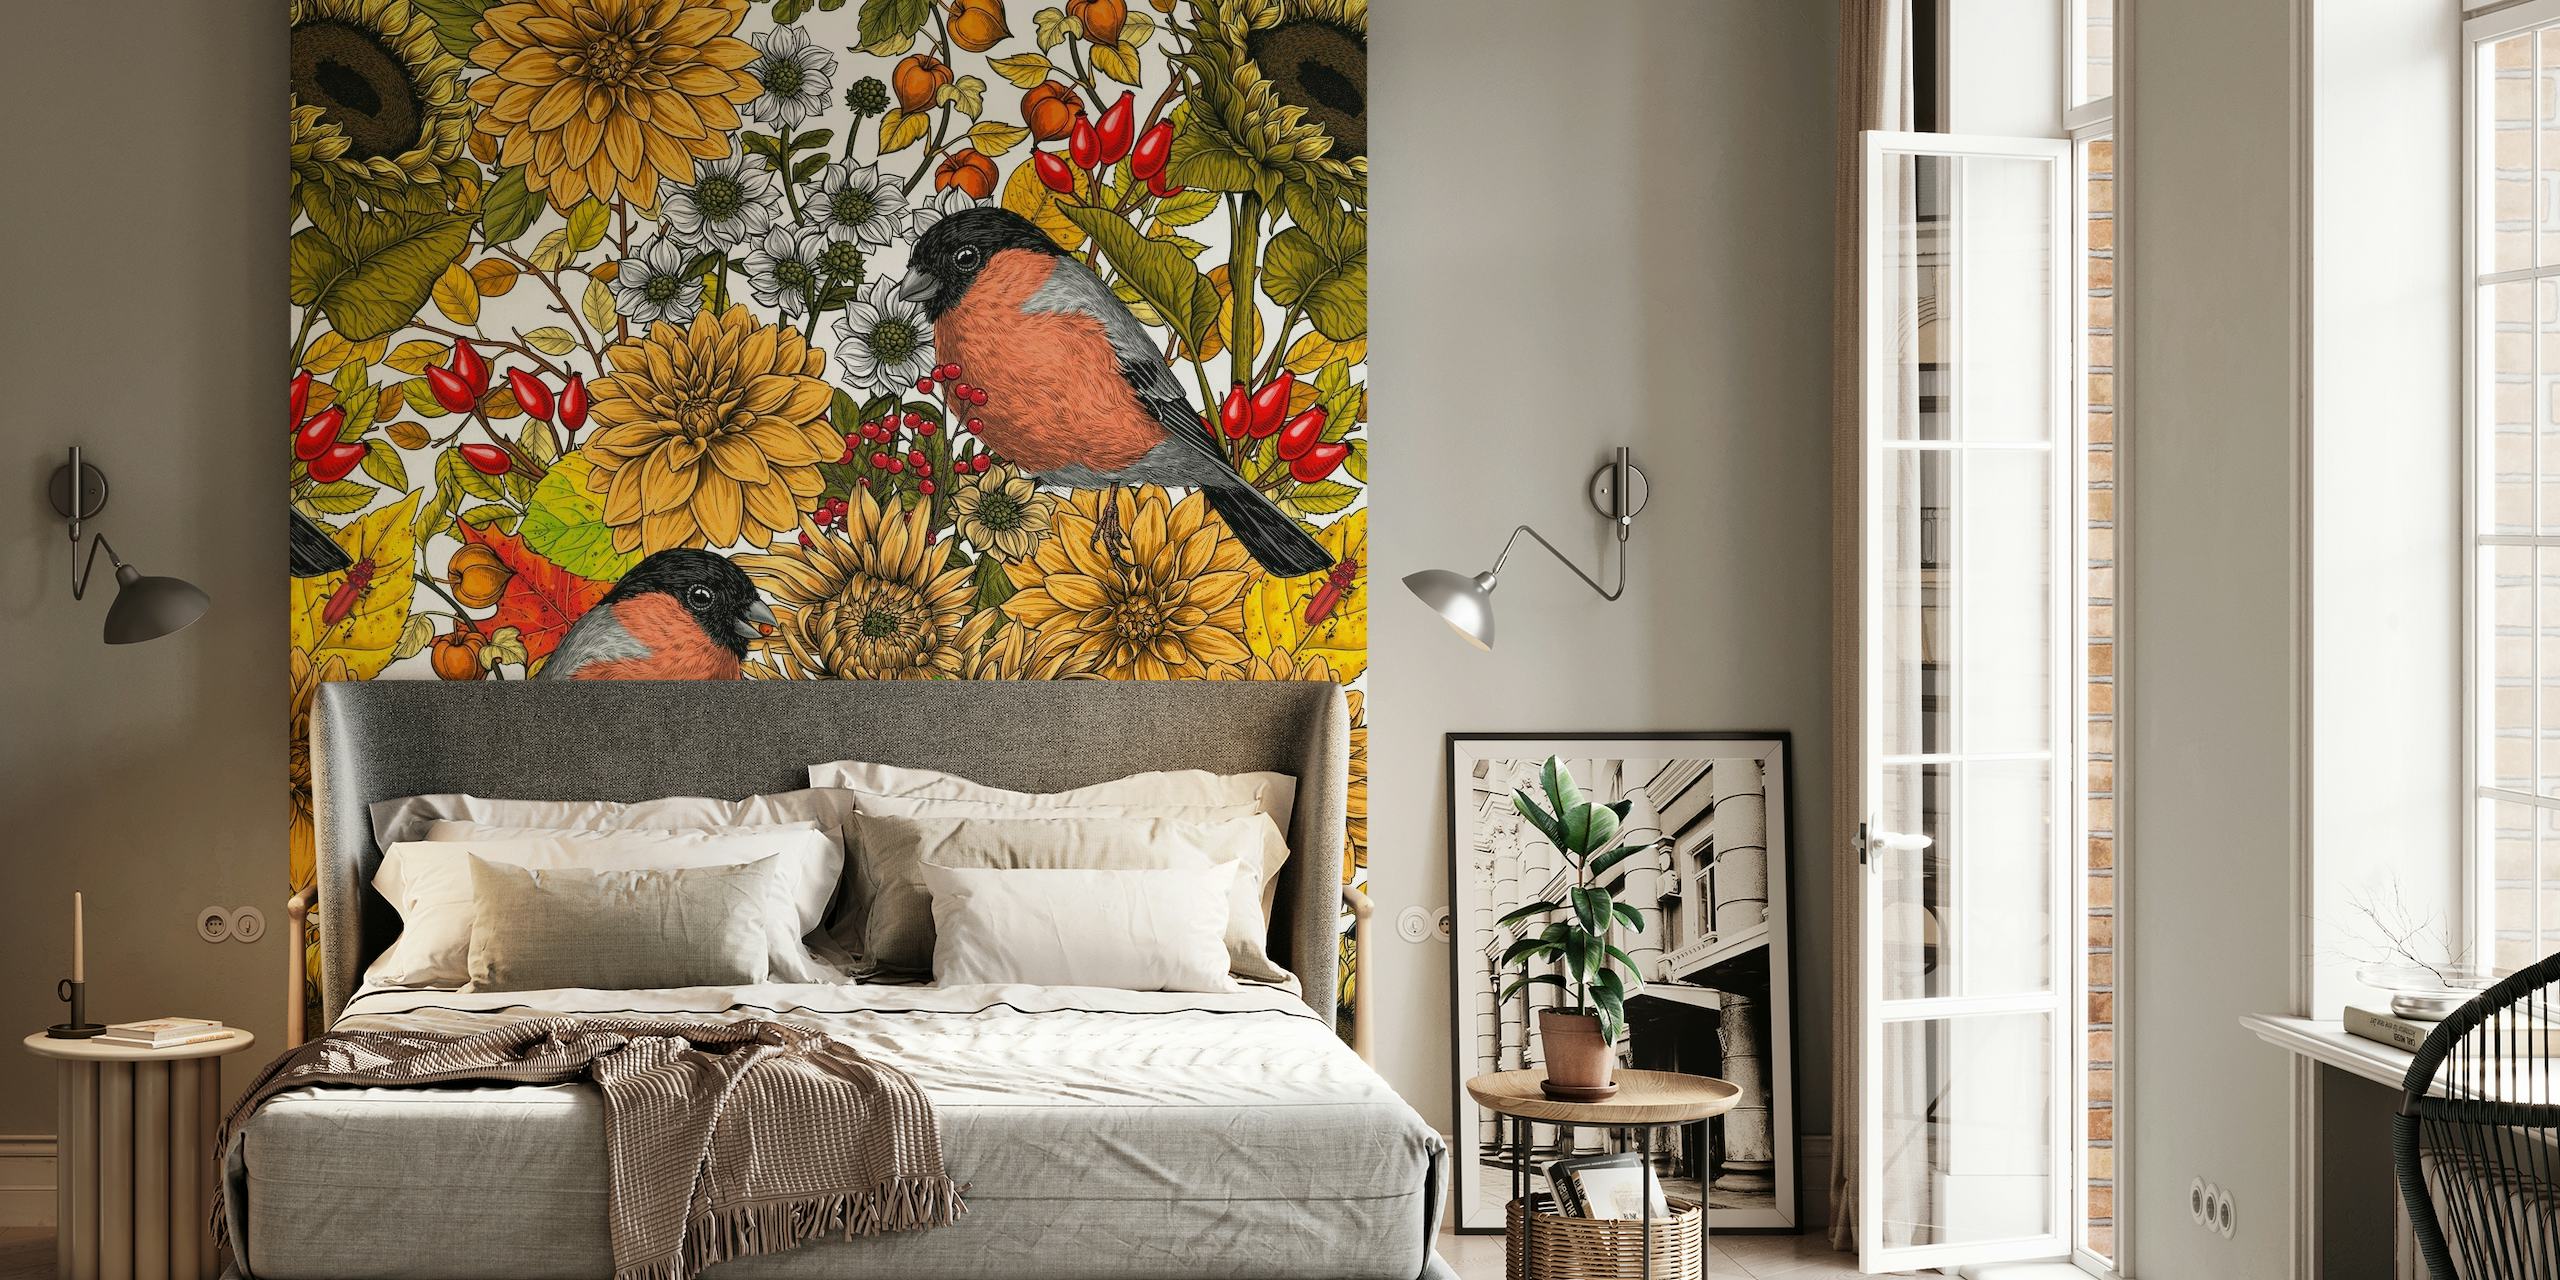 Zidna slika sa suncokretima, nevenom i pticama koje predstavljaju jesenski vrtni krajolik